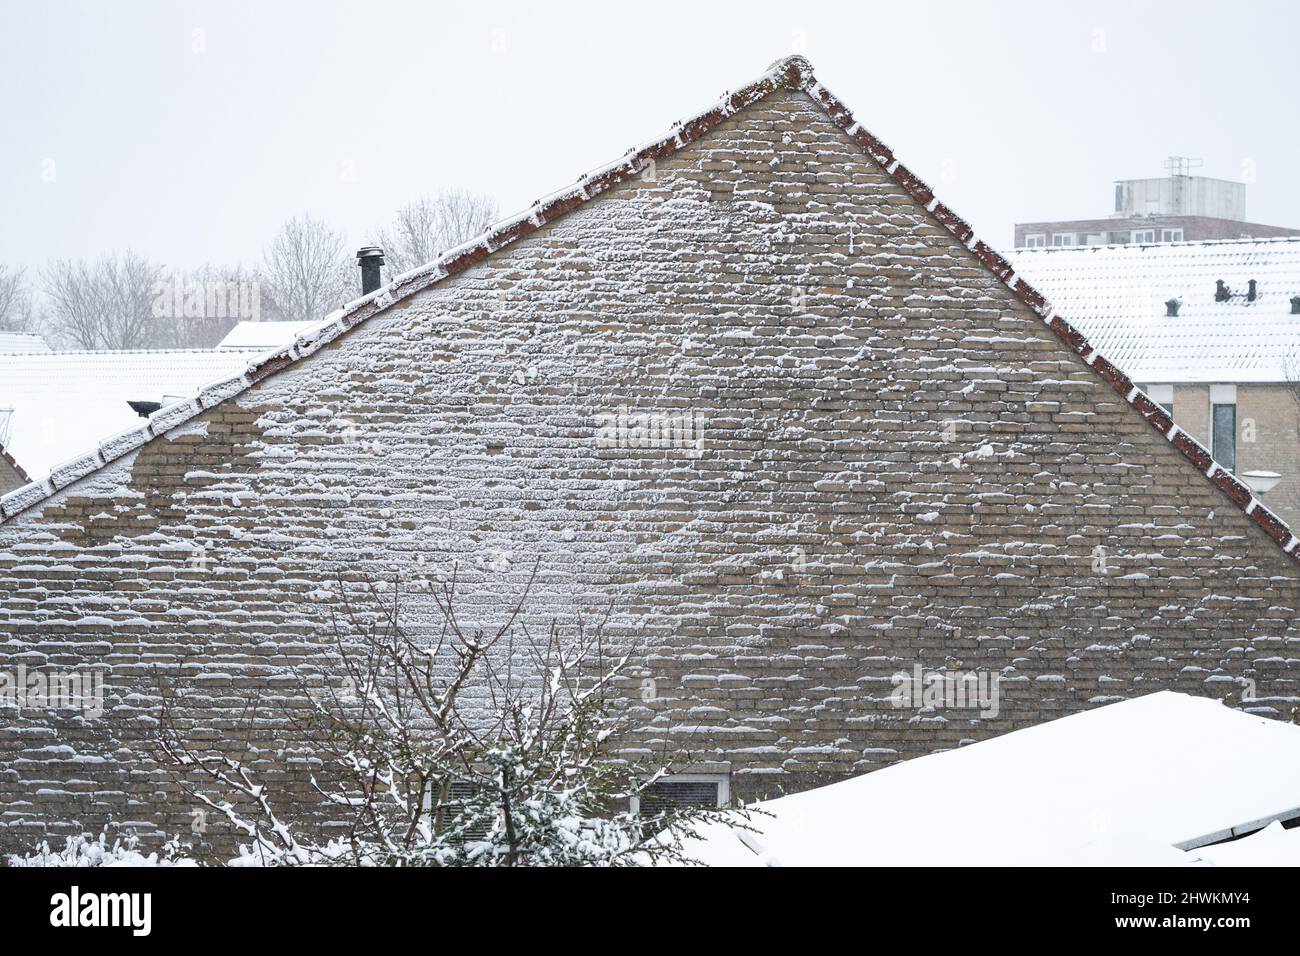 Un mur d'une maison est couvert de neige pendant un blizzard. Effet texturé sur le mur d'une maison, causé par le souffle de neige pendant une tempête de neige. Banque D'Images